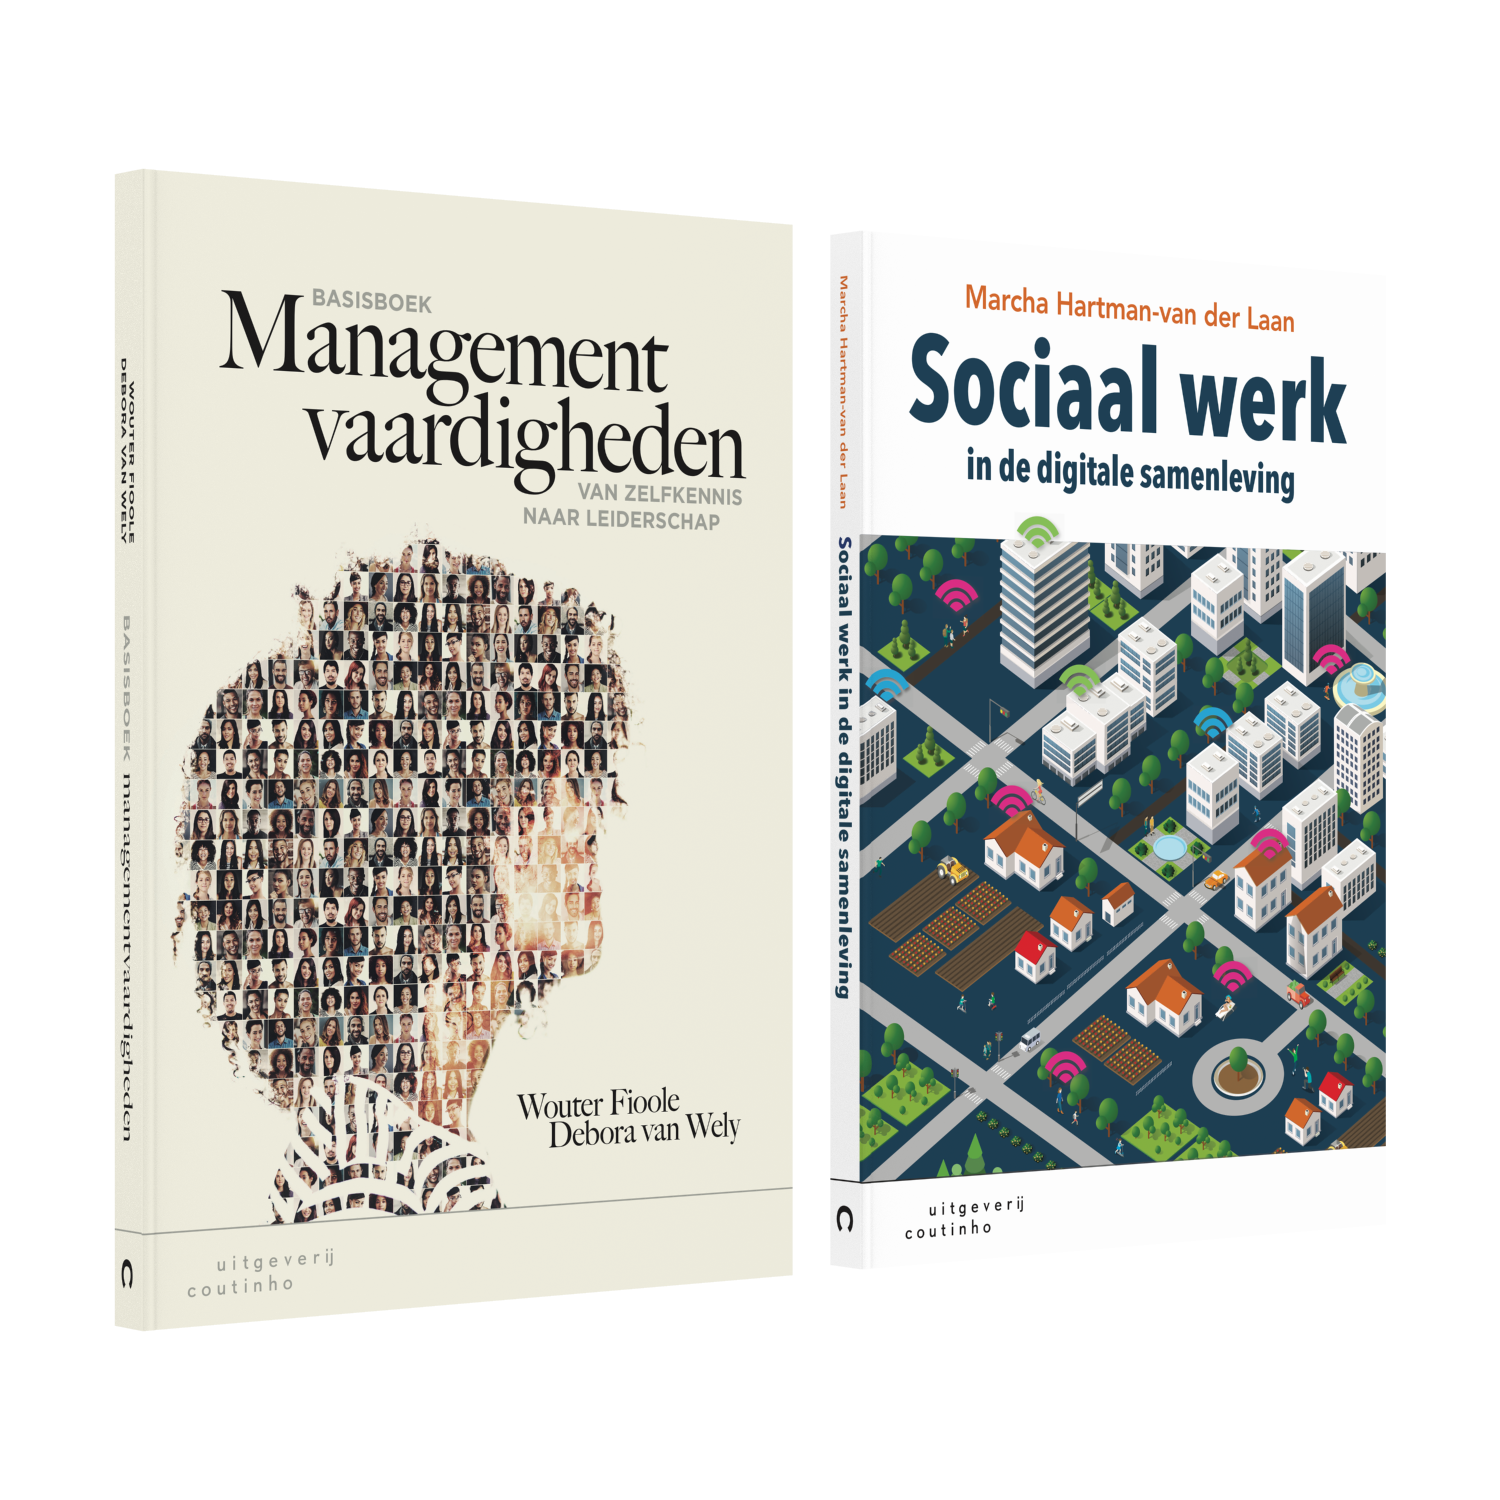 Management vaardigheden en Sociaal werk in de digitale samenleving